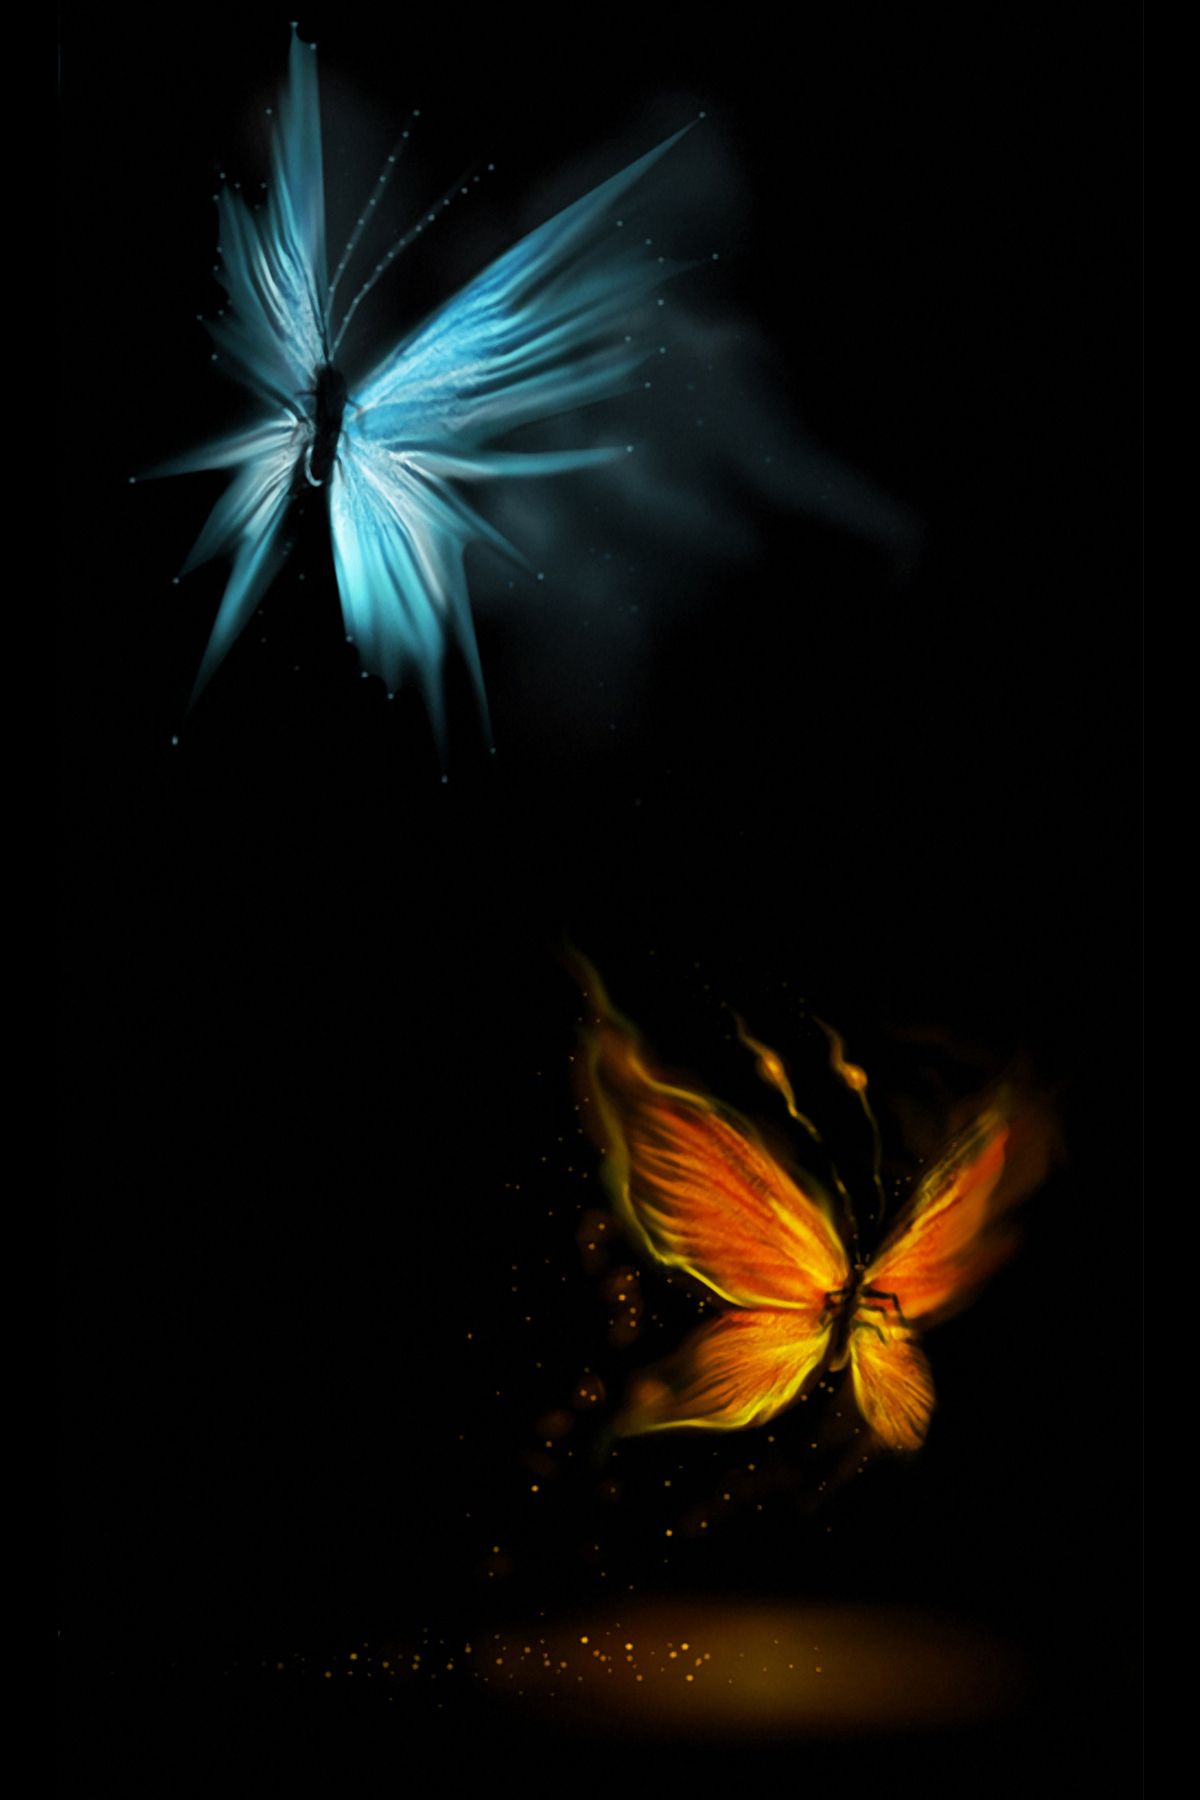 mariposa live wallpaper,oscuridad,mariposa,insecto,cielo,polillas y mariposas